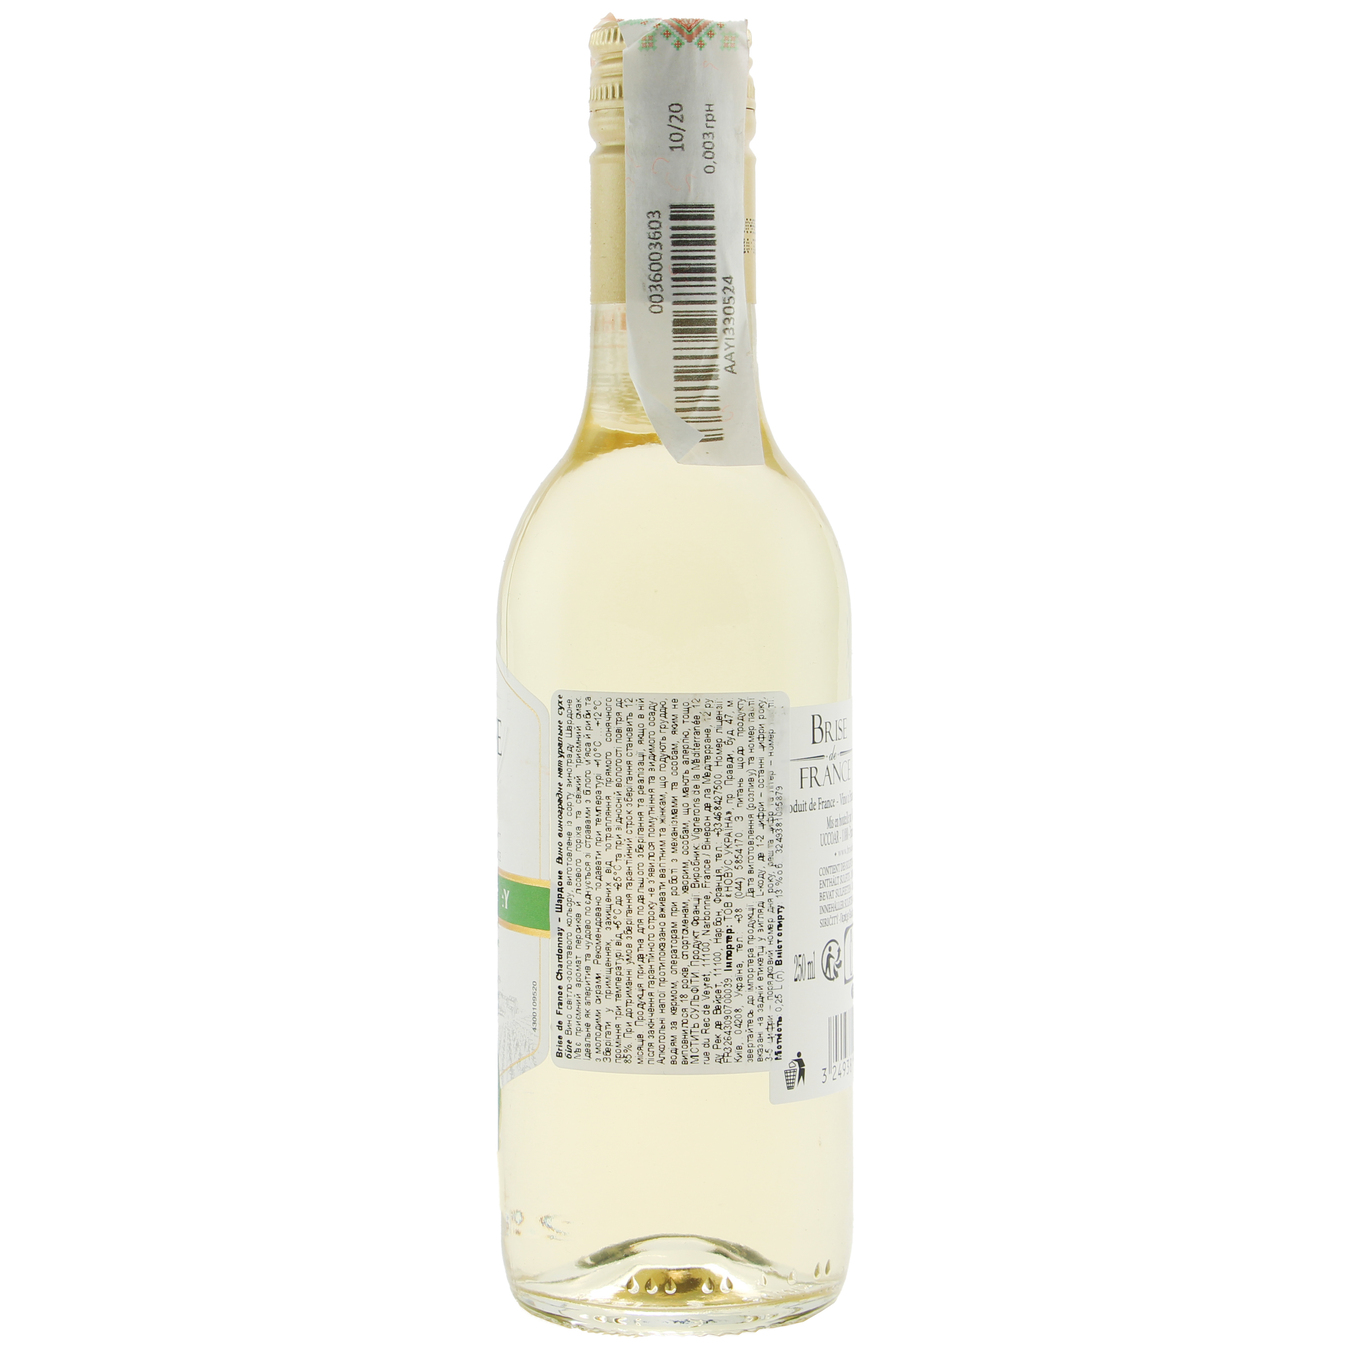 Вино Brise de France Chardonnay белое сухое 12,5% 0,25л 2